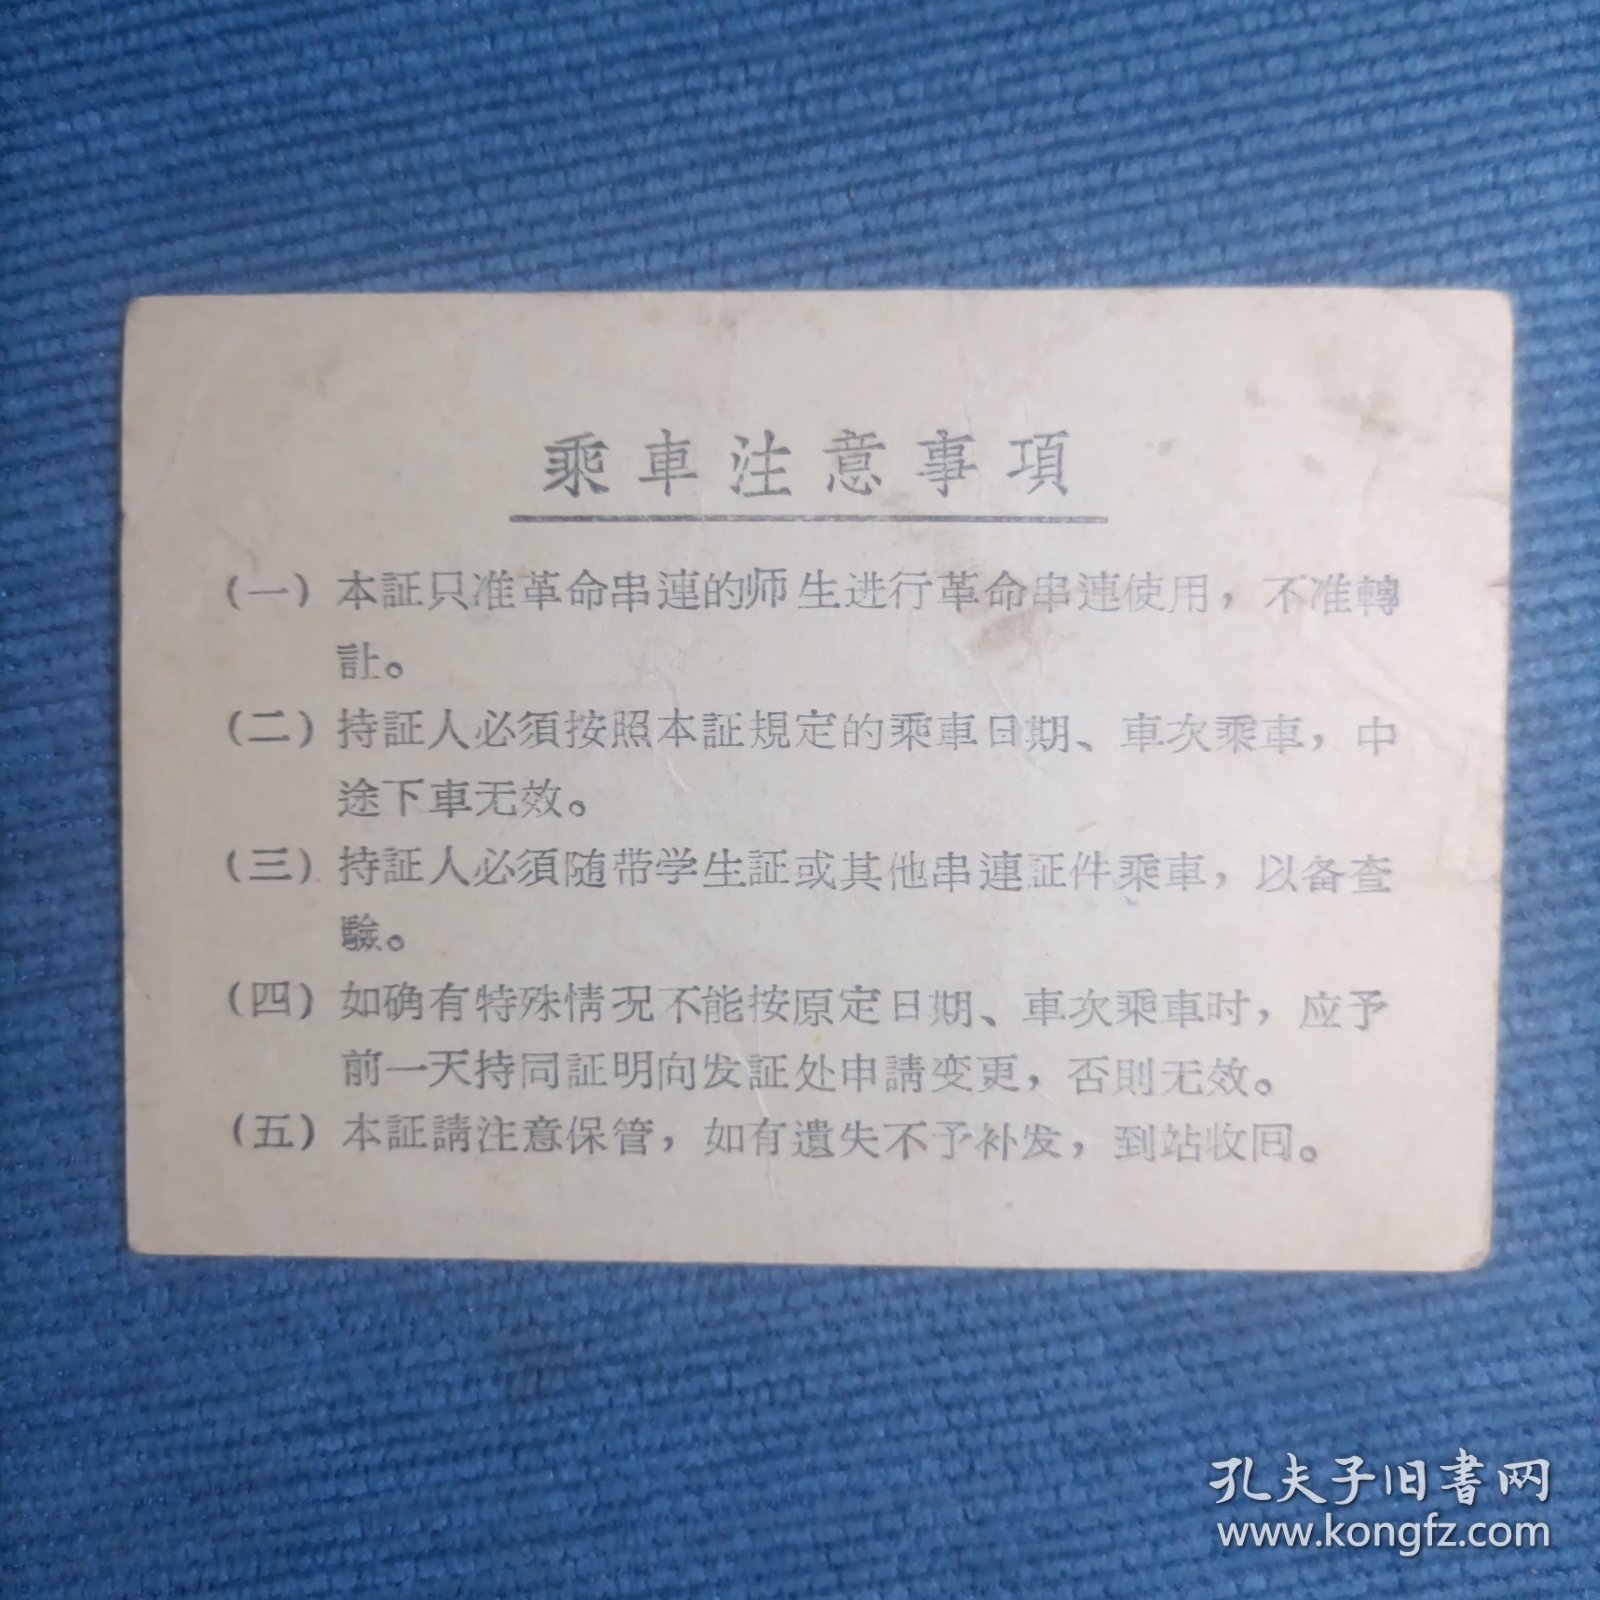 革命师生串连临时乘坐火车证 返程票 1966年（毛主席语录）自广州站至汉口站